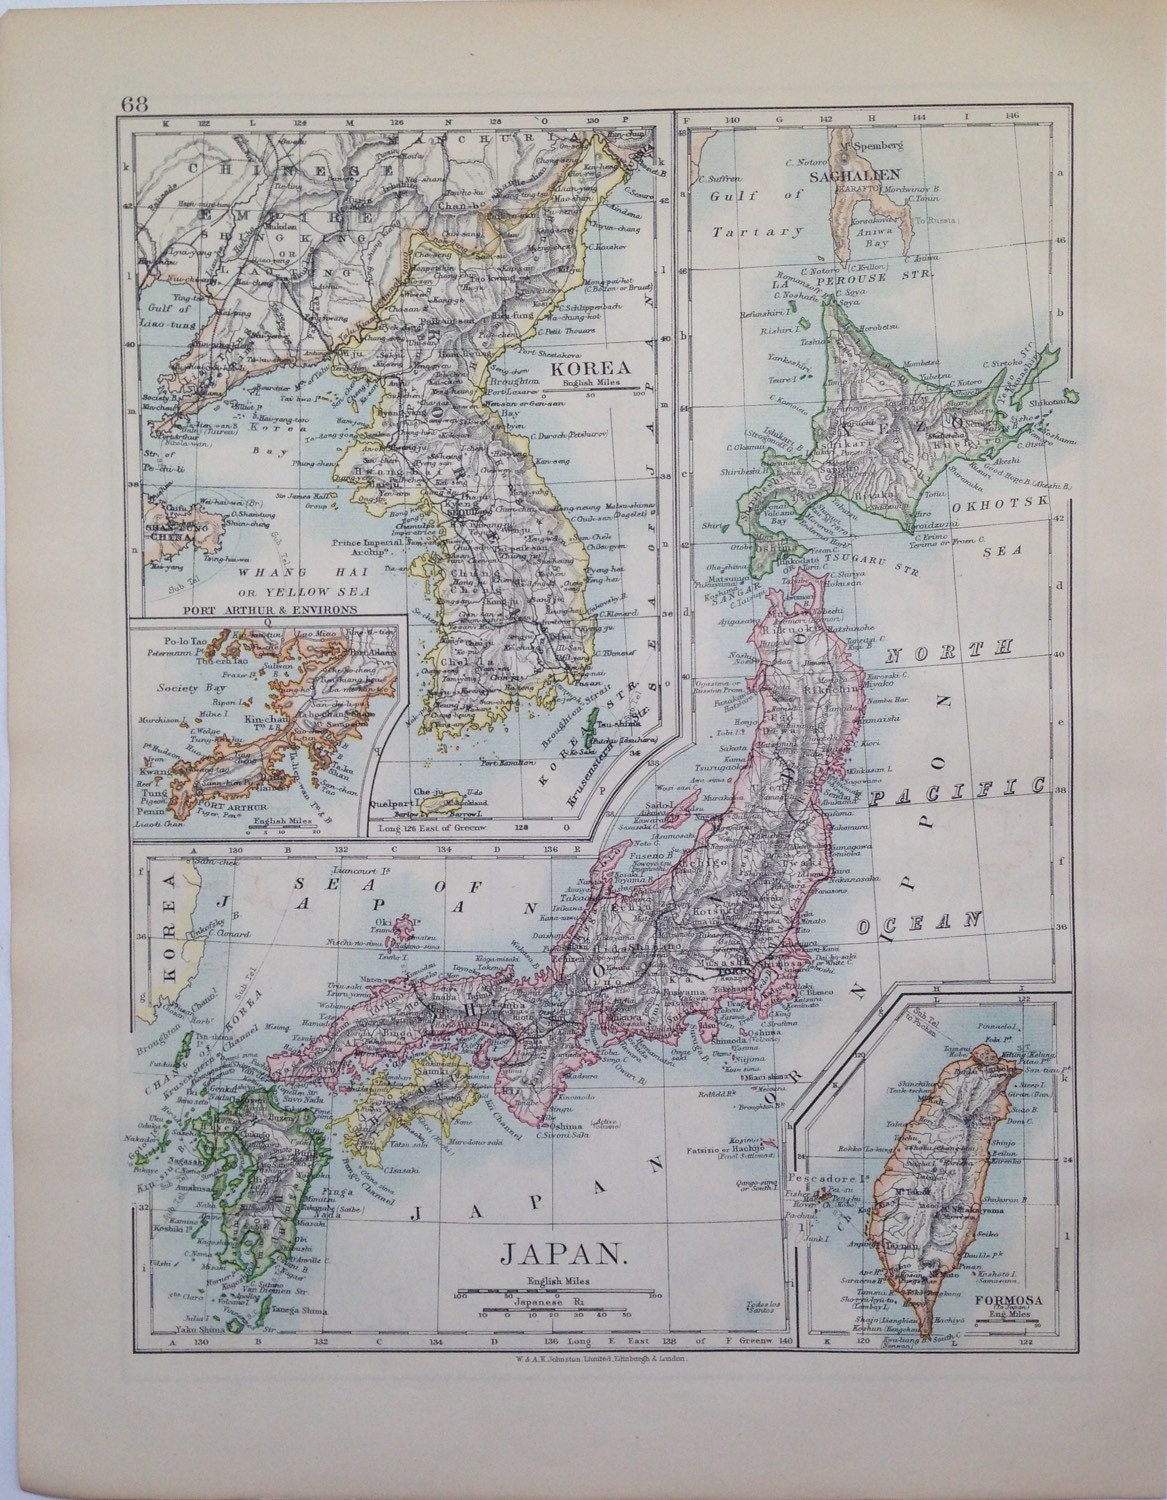 1906 Japan & Korea/Russia in Asia original antique map, historical ...